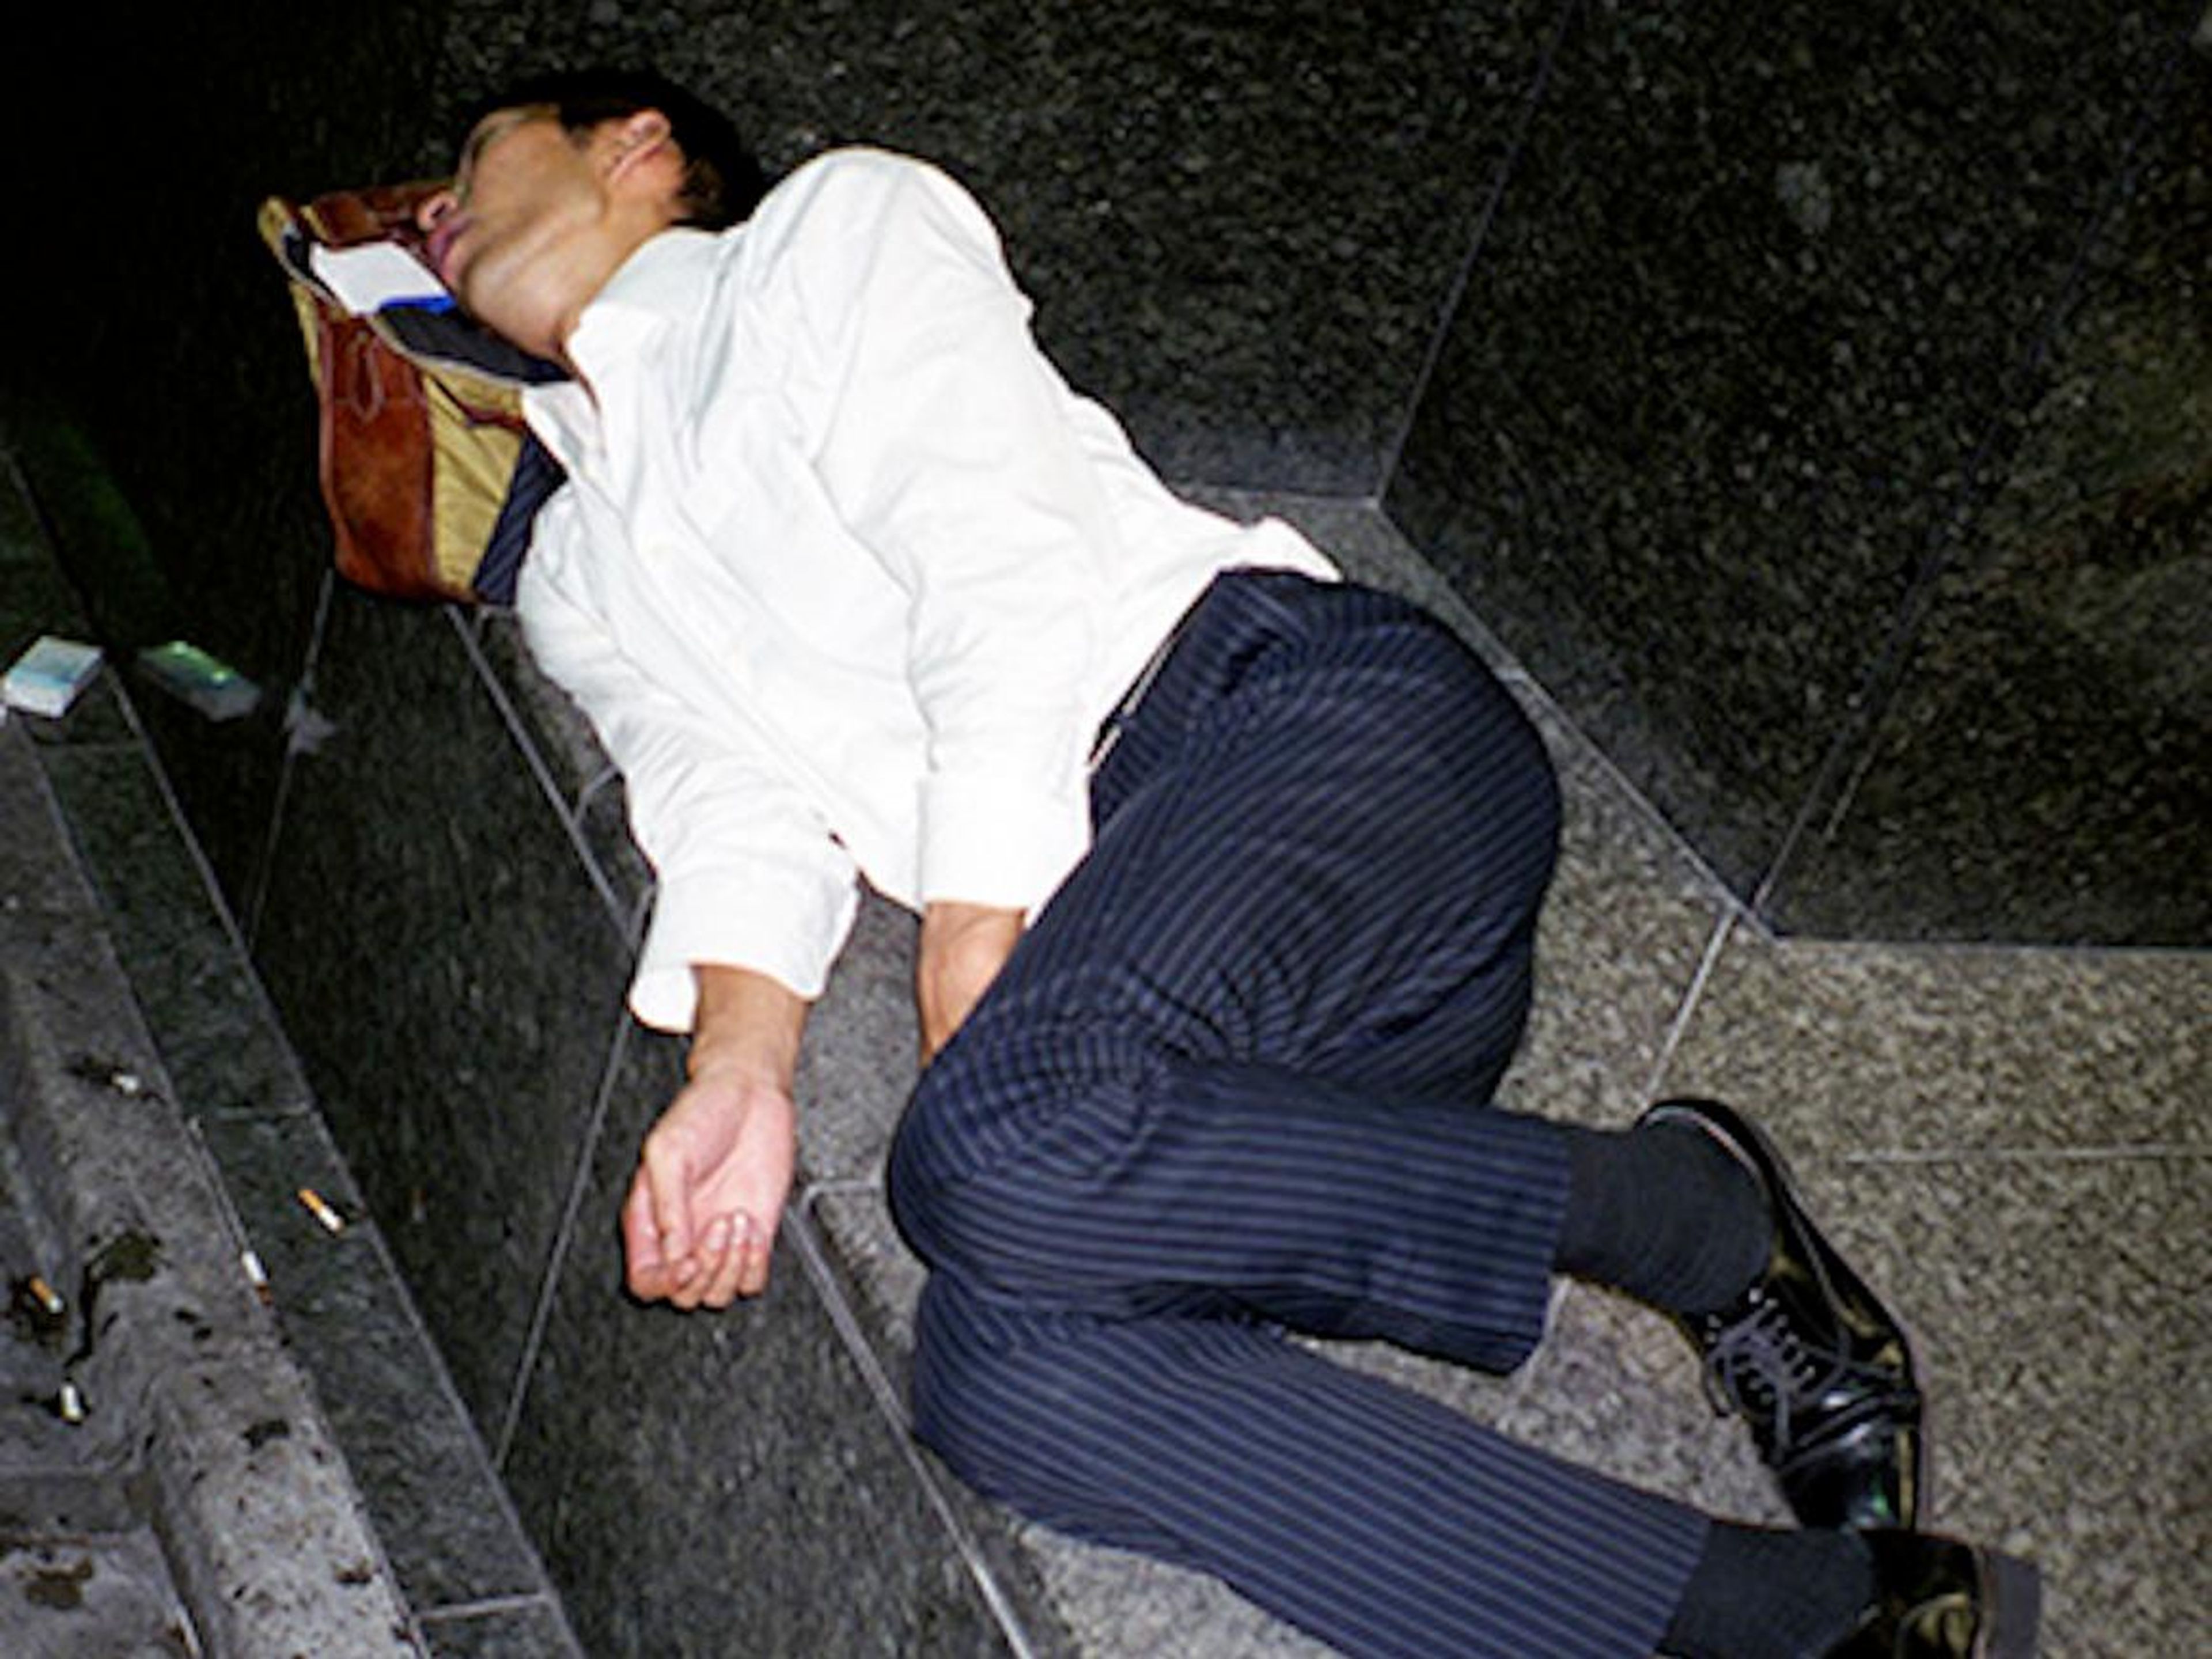 Los hombres fotografiados en esta serie de fotos están durmiendo.